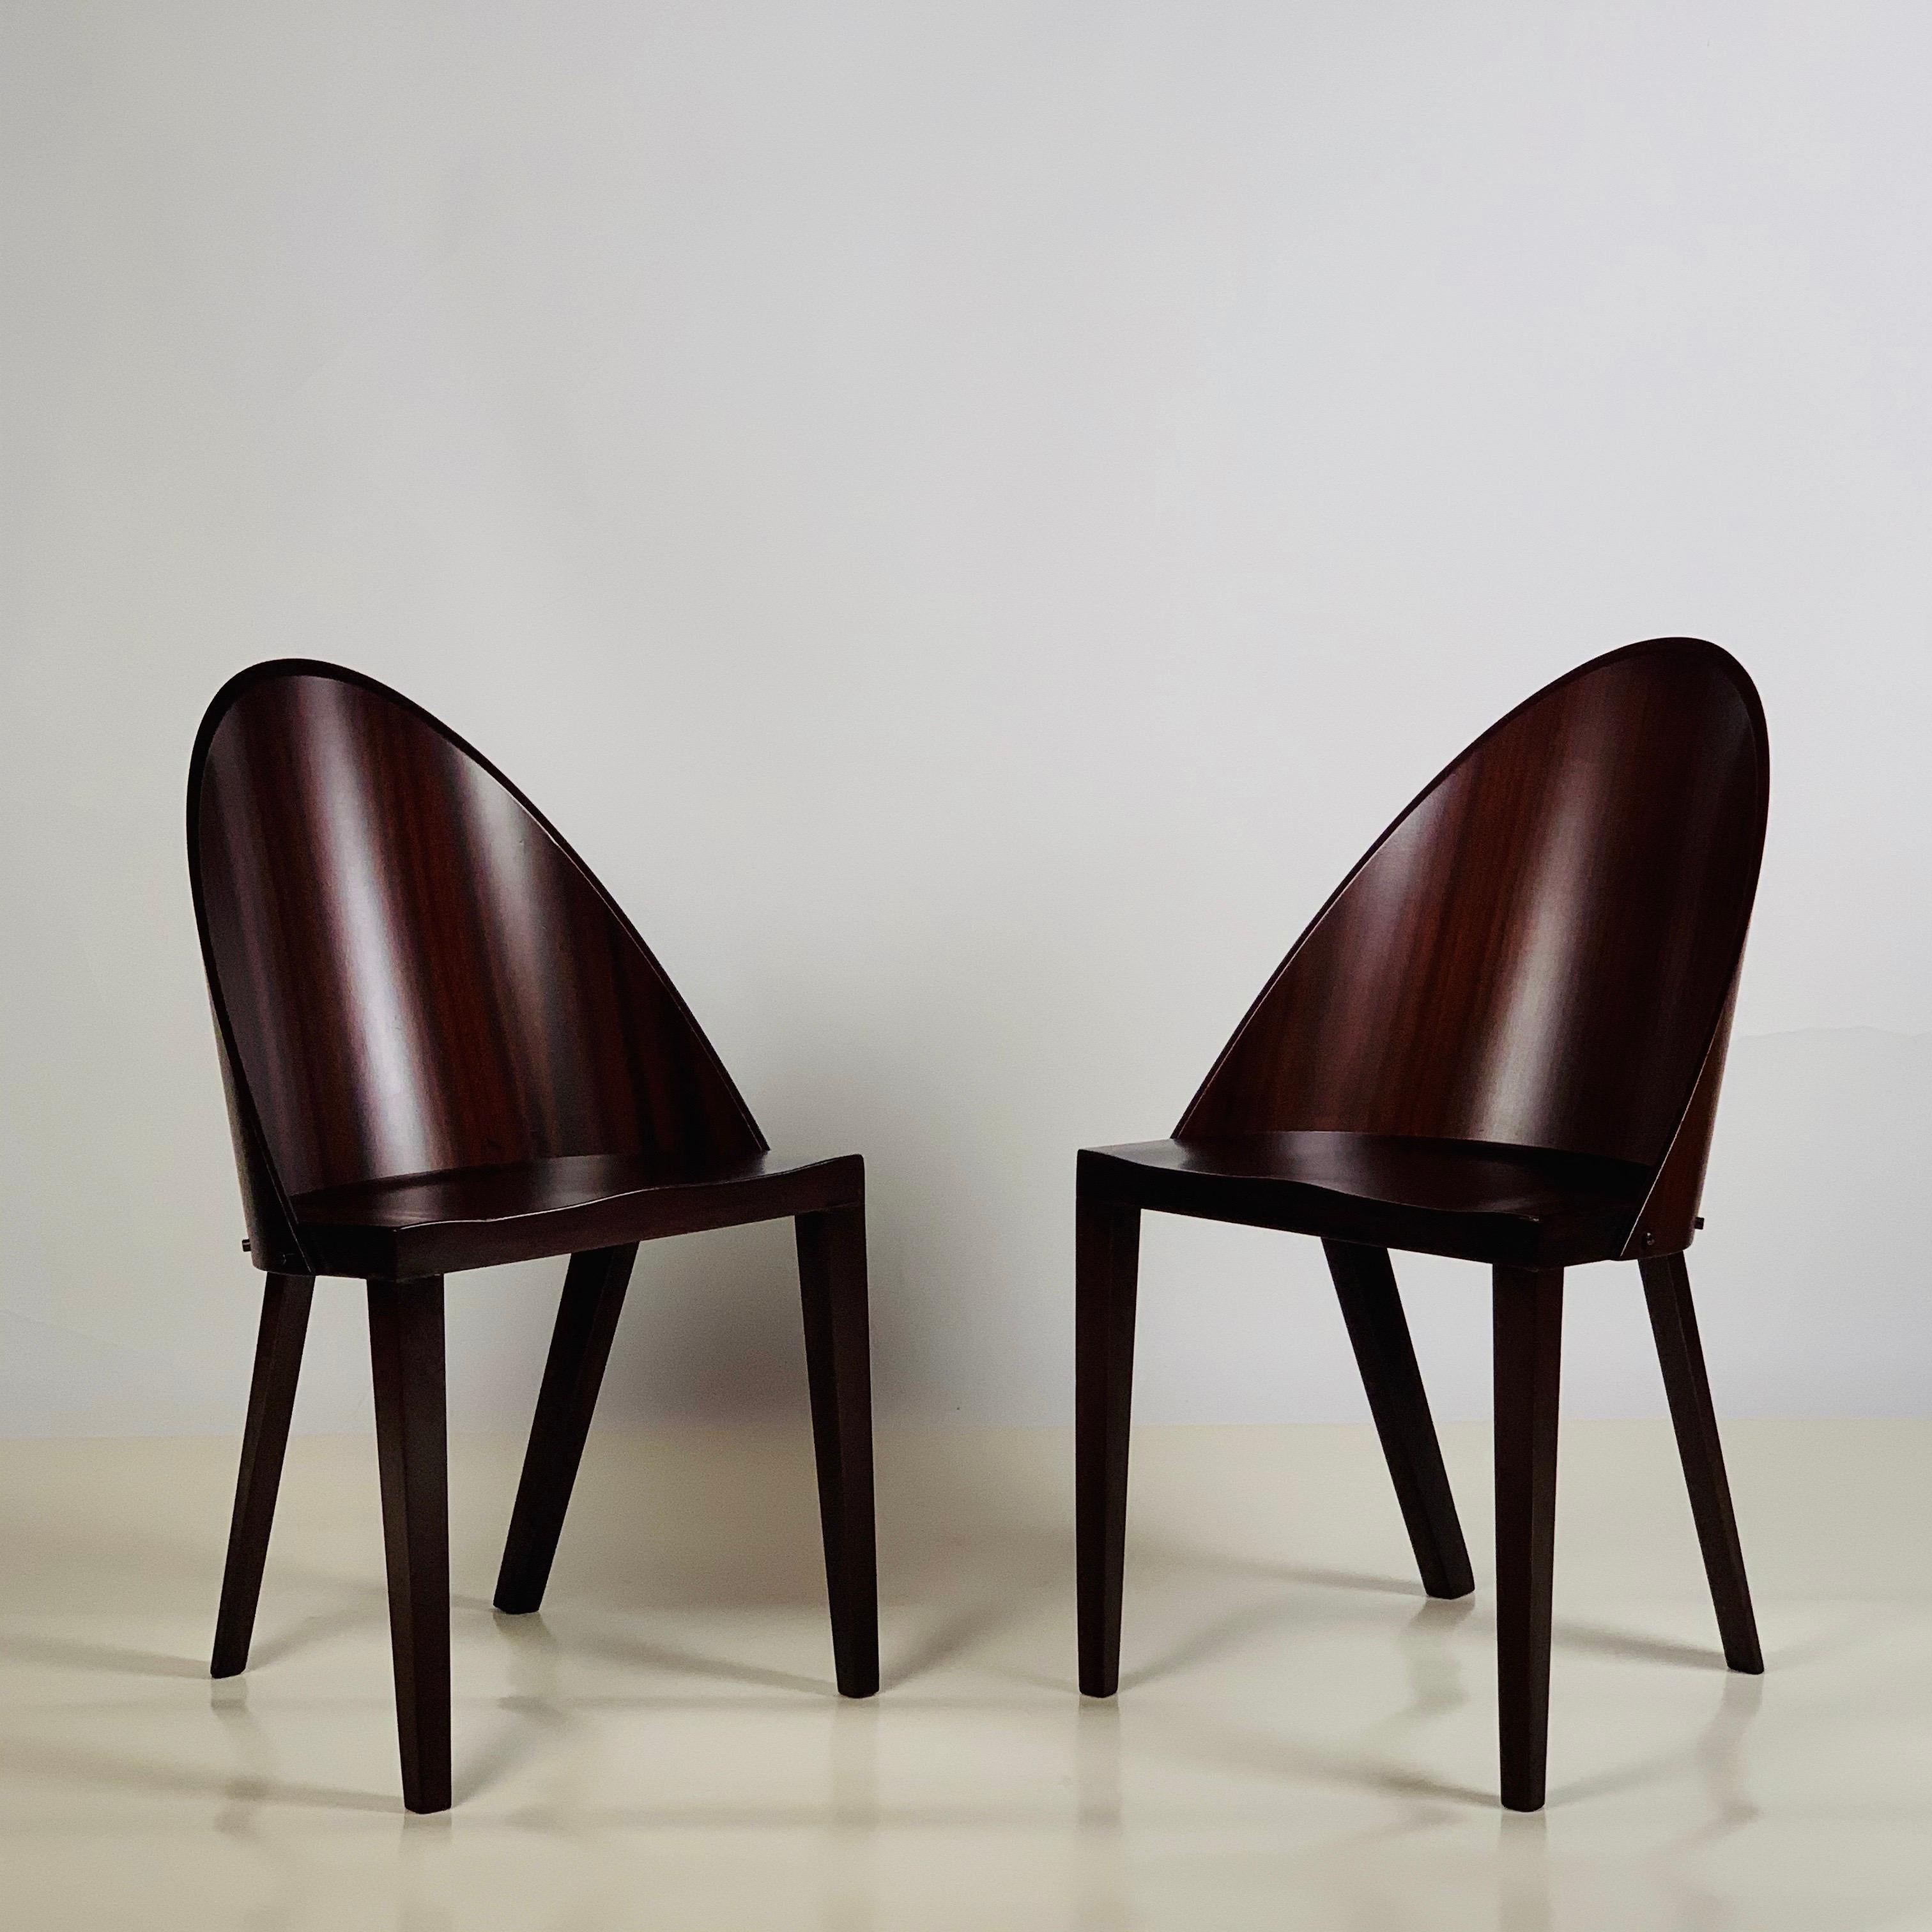 Rare paire de chaises Philippe Starck provenant de l'hôtel Royalton, NYC. Étiquette originale. L'hôtel Royalton est situé juste à l'est de Times Square à Manhattan, au 44 West 44th Street. Il a été le premier hôtel conçu par Philippe Starck et a